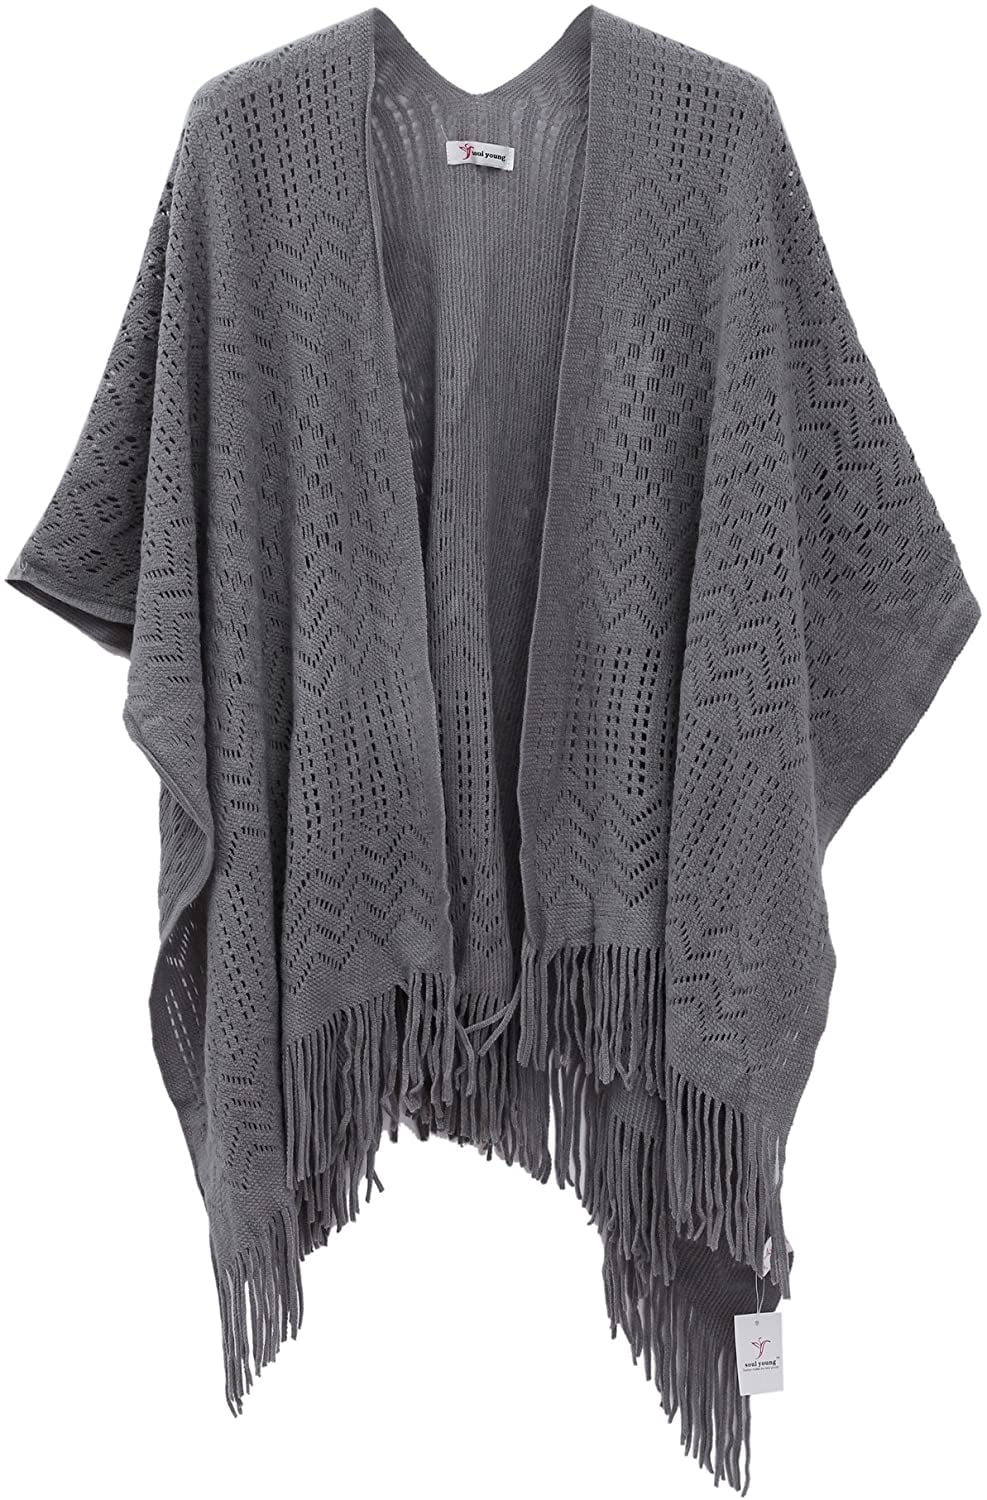 bang Gøre mit bedste Over hoved og skulder Knit Shawl Wrap for Women - Fringe Knitted Poncho Cardigan Cape Grey -  Walmart.com